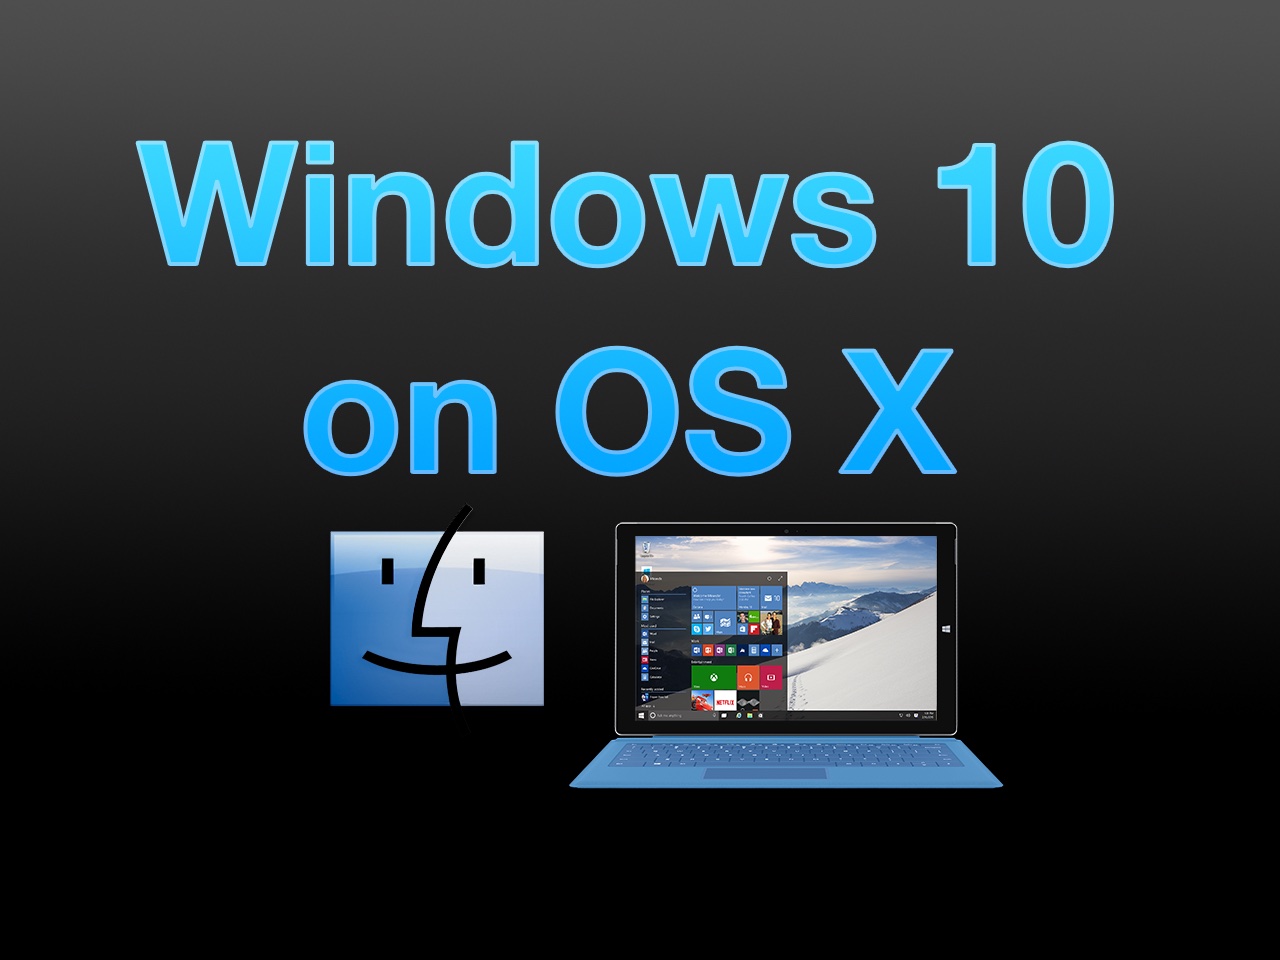 Windows 10 on OS X